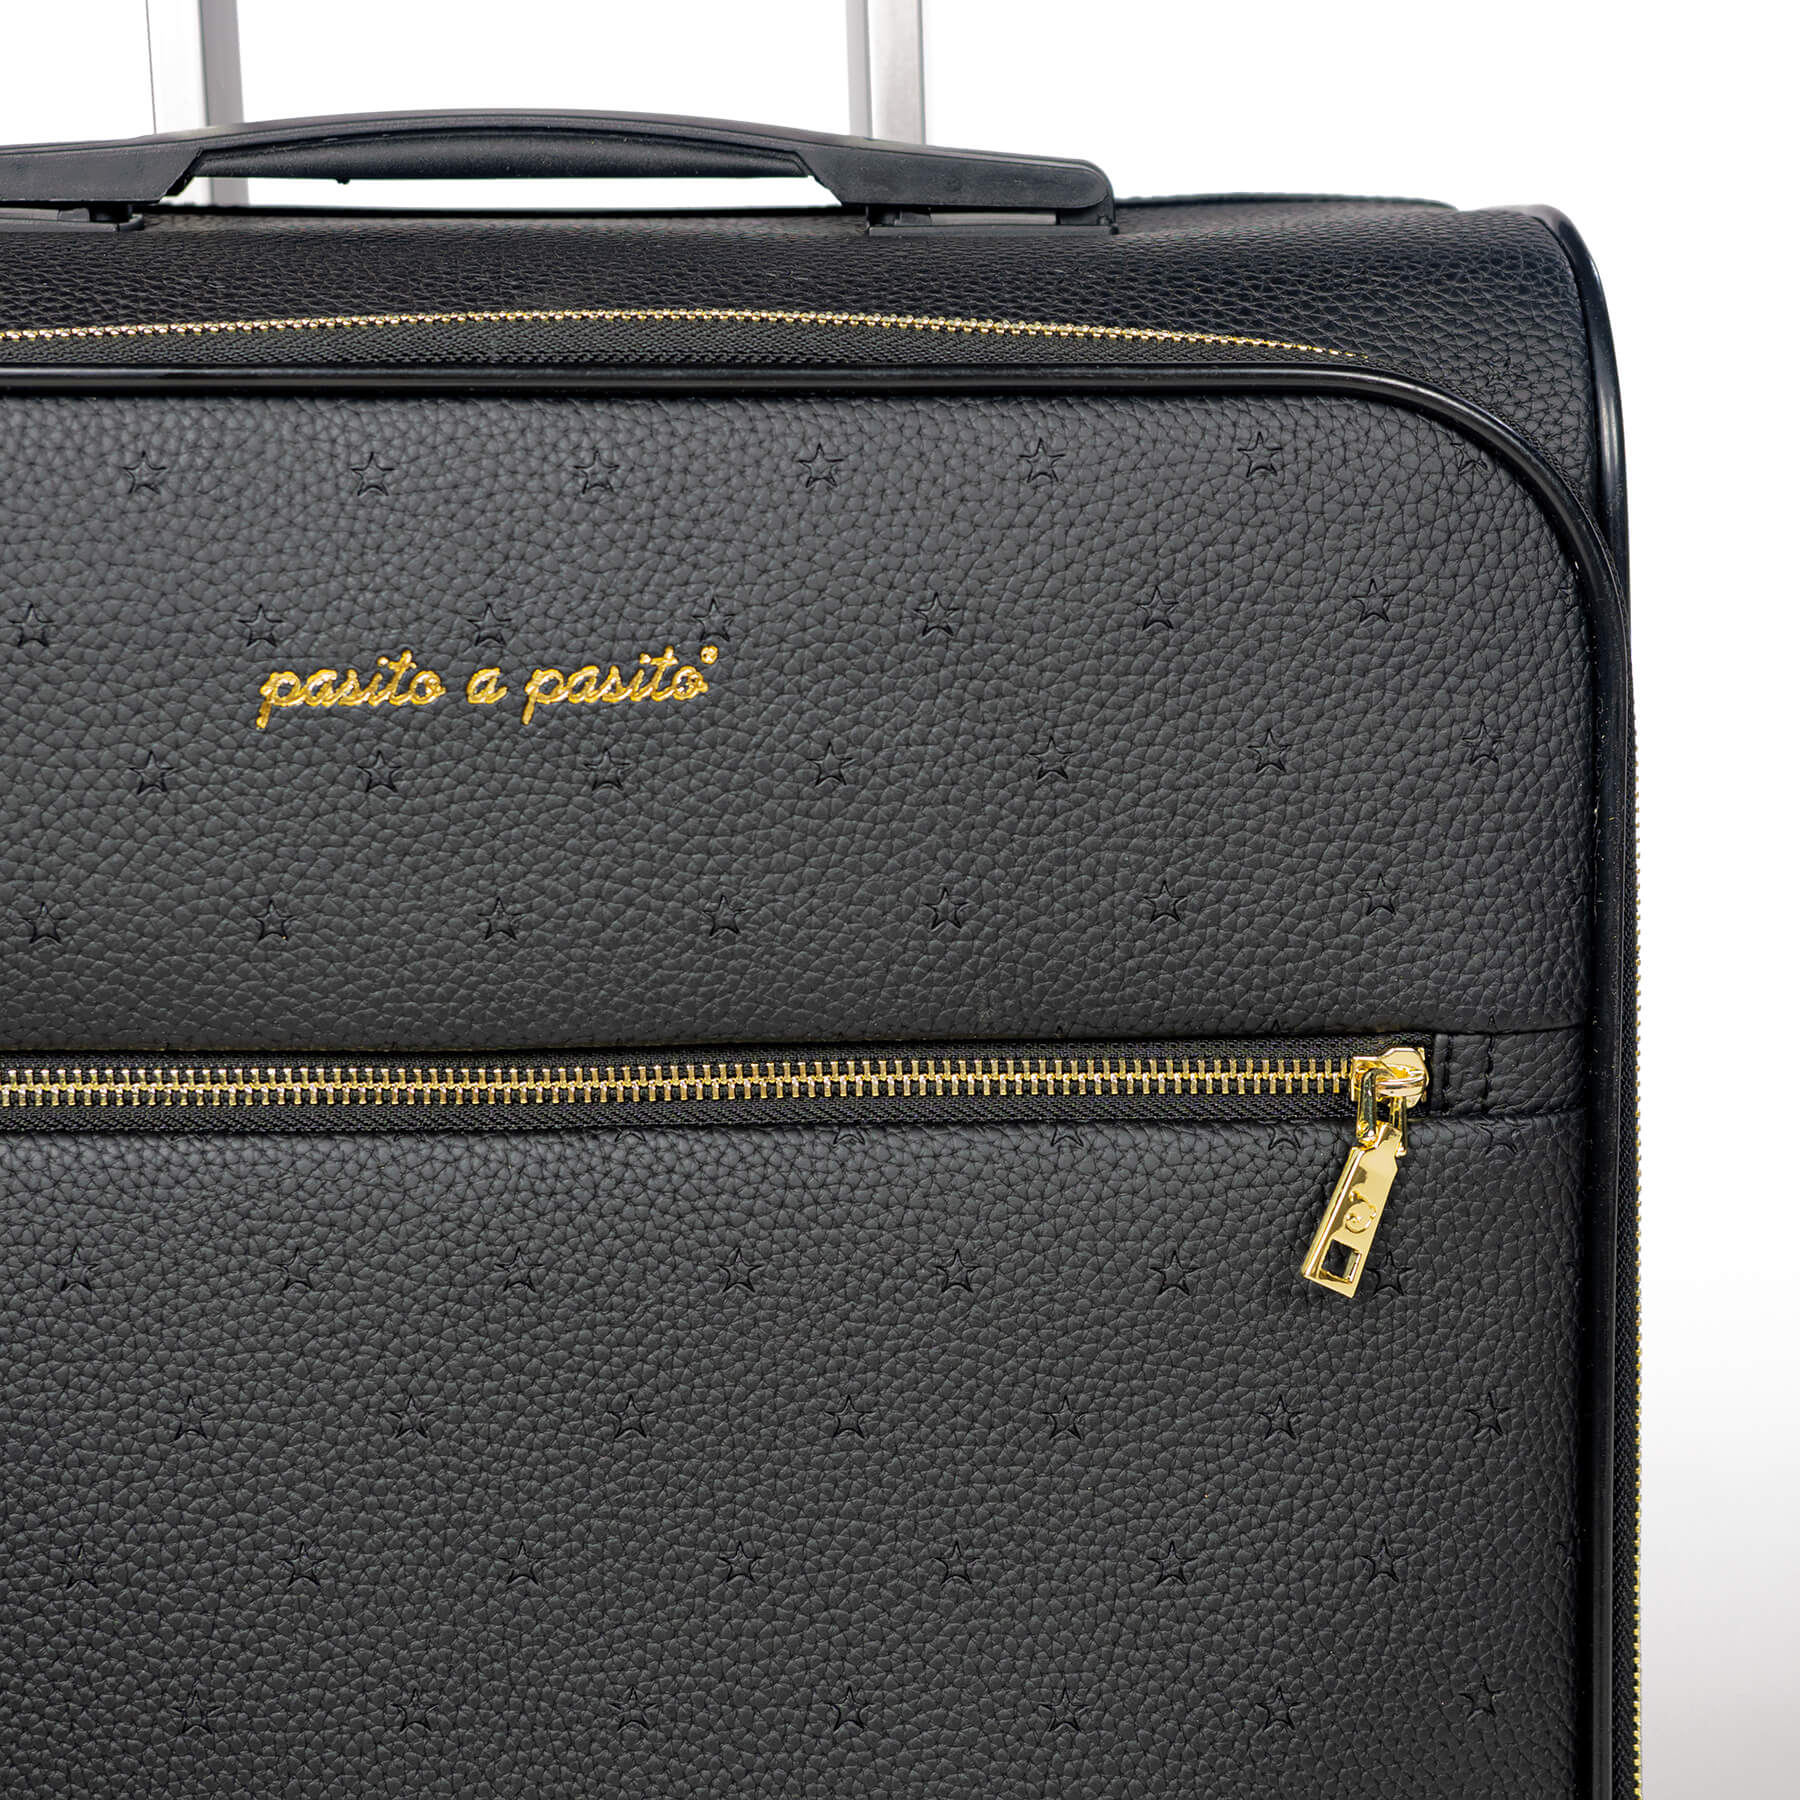 Elegante set borsone + valigia London in eco pelle nera Pasito a Pasito